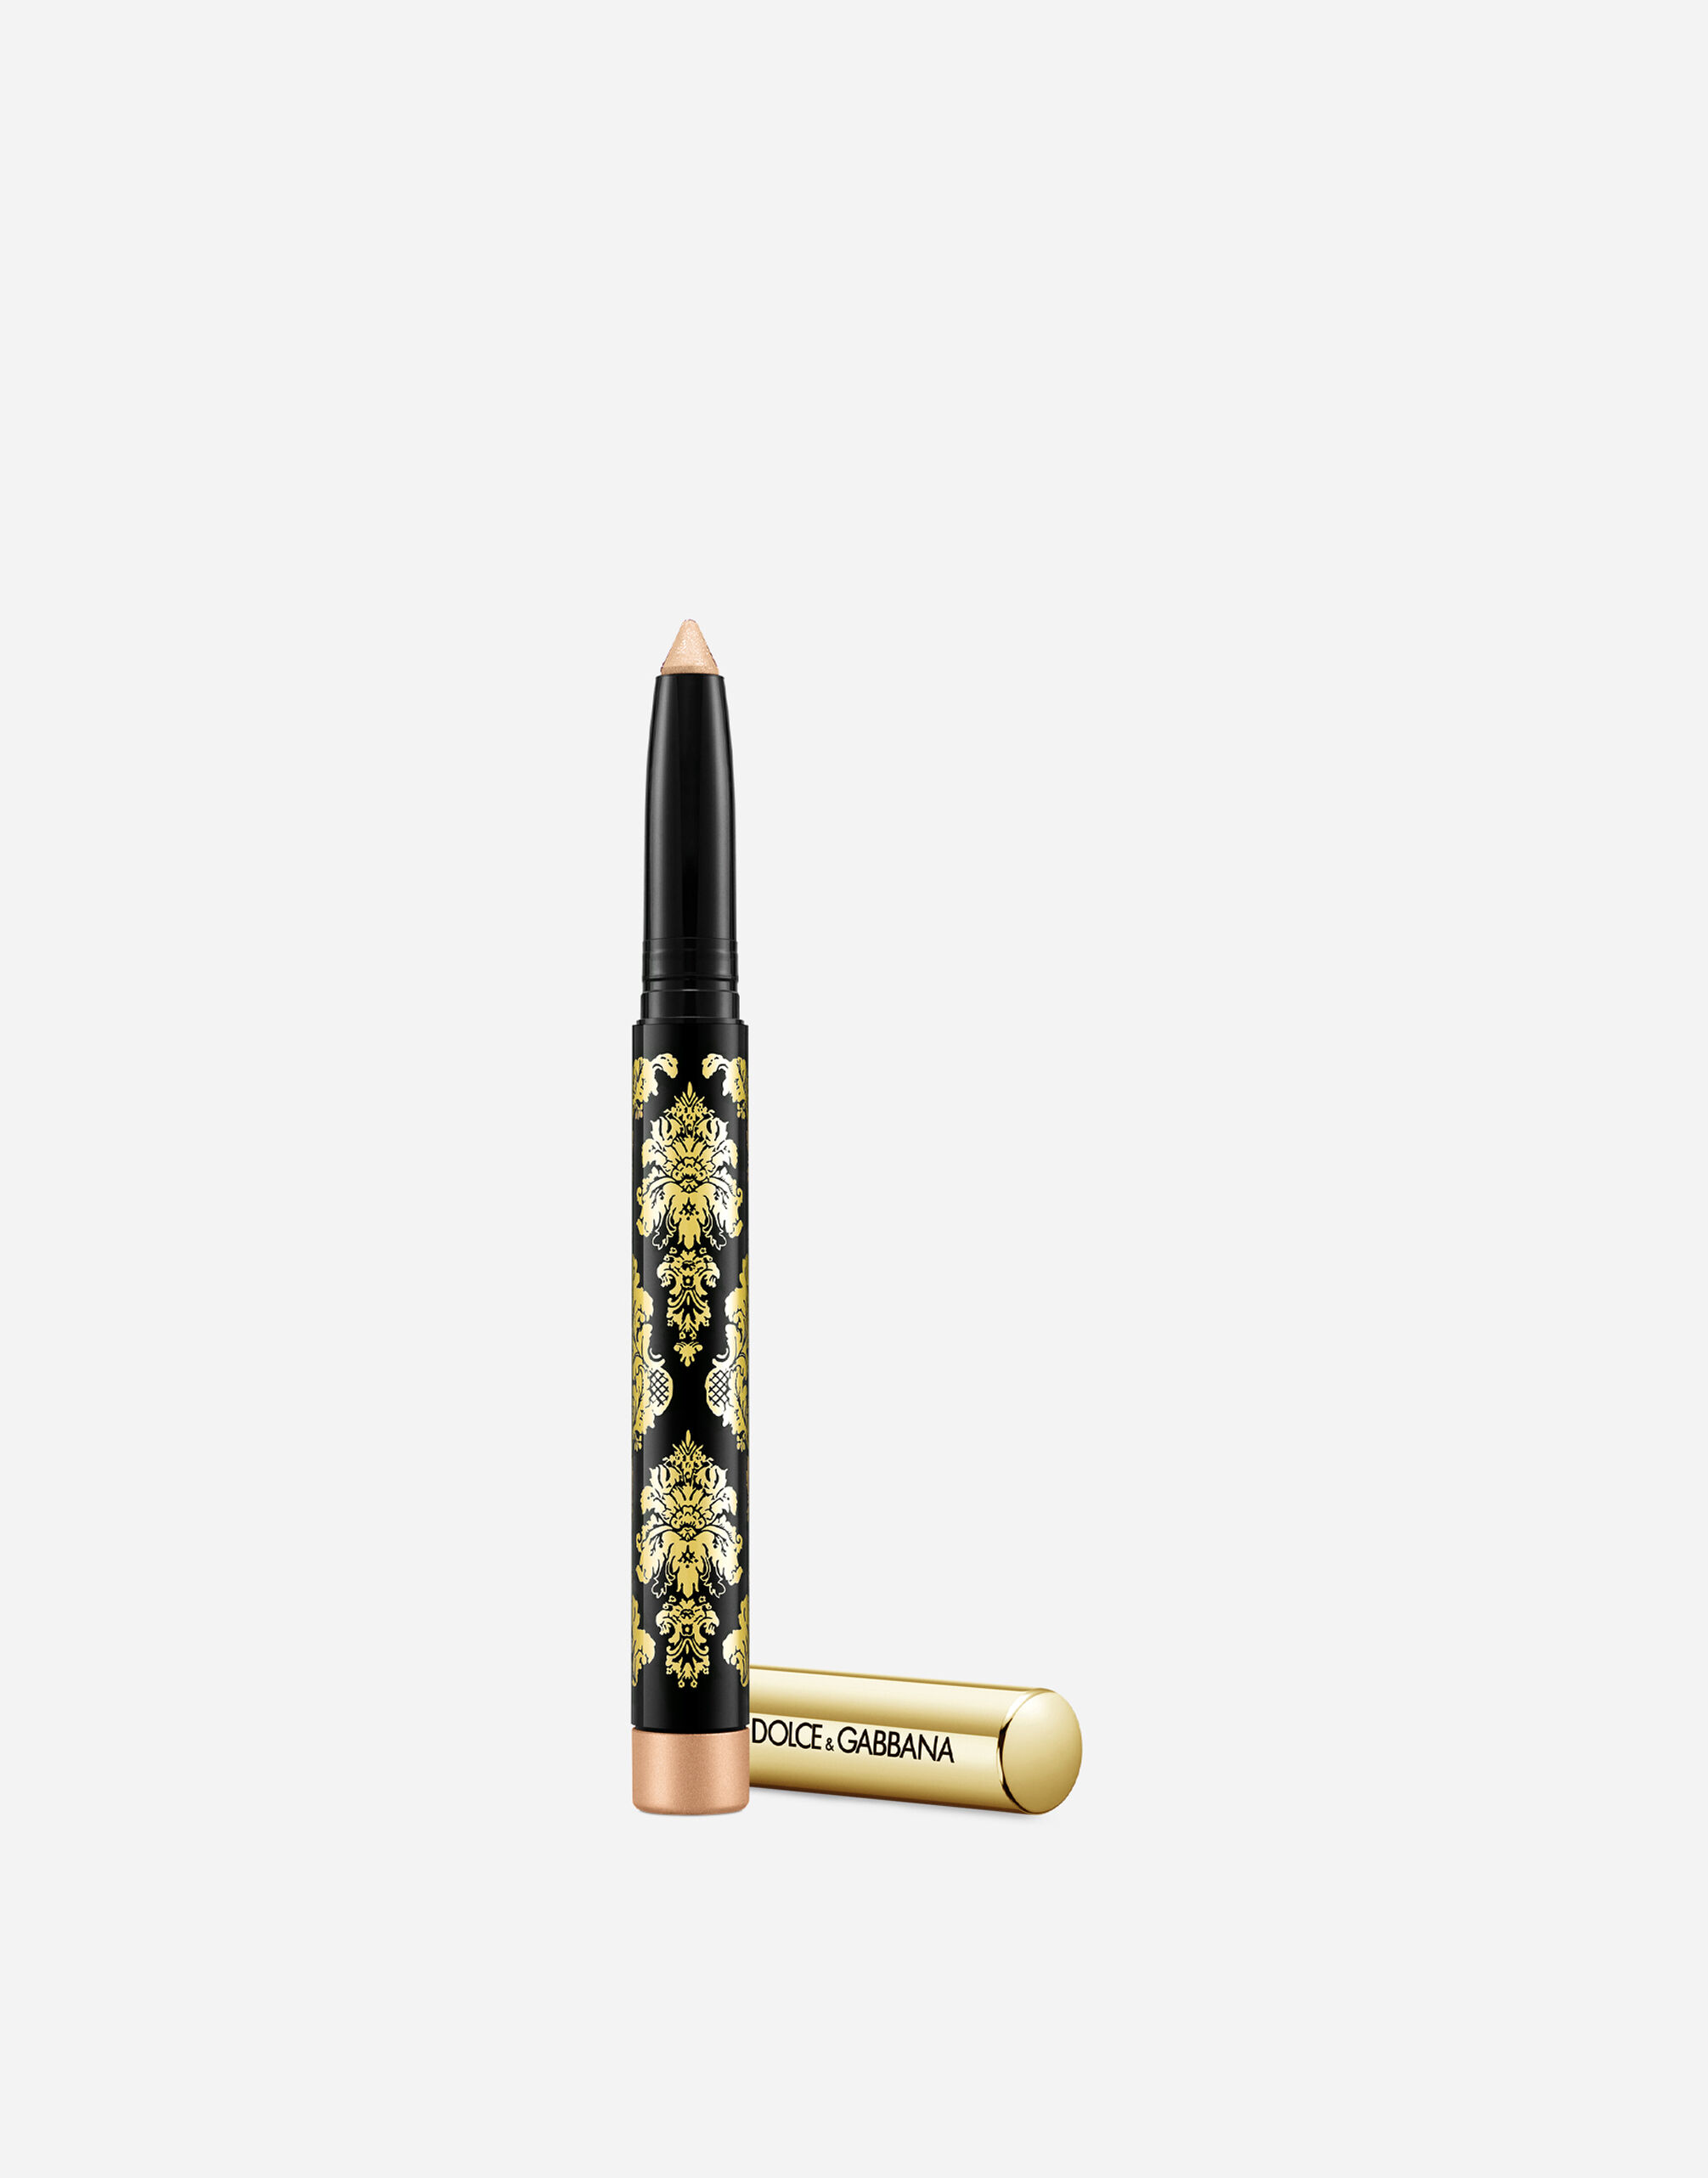 Тени-карандаш для глаз Dolce & Gabbana Intenseyes кремовые, №7 Shimmer, 1,4 г ультрастойкие тени карандаш – 07 серо коричневый бежевый